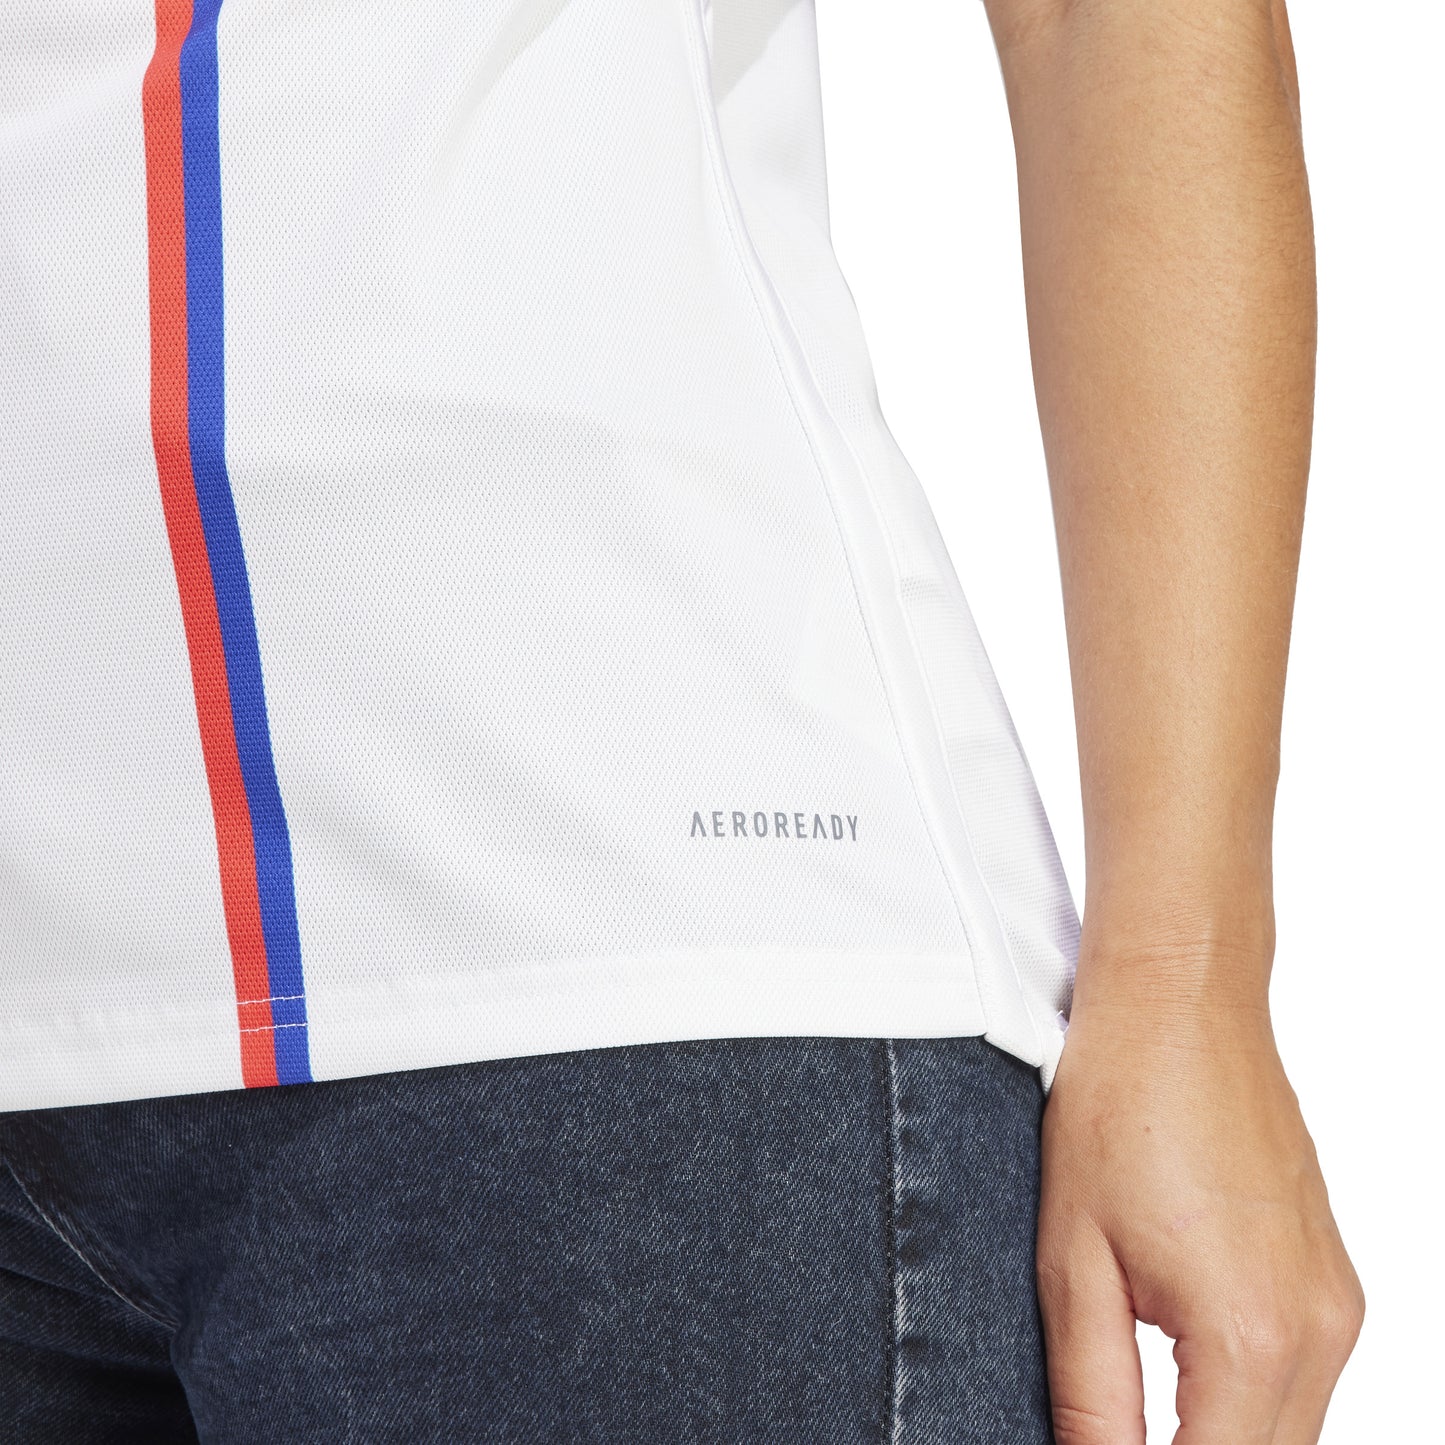 Camiseta Adidas Stadium de corte curvo de primera equipación del Olympique Lyonnais 23/24